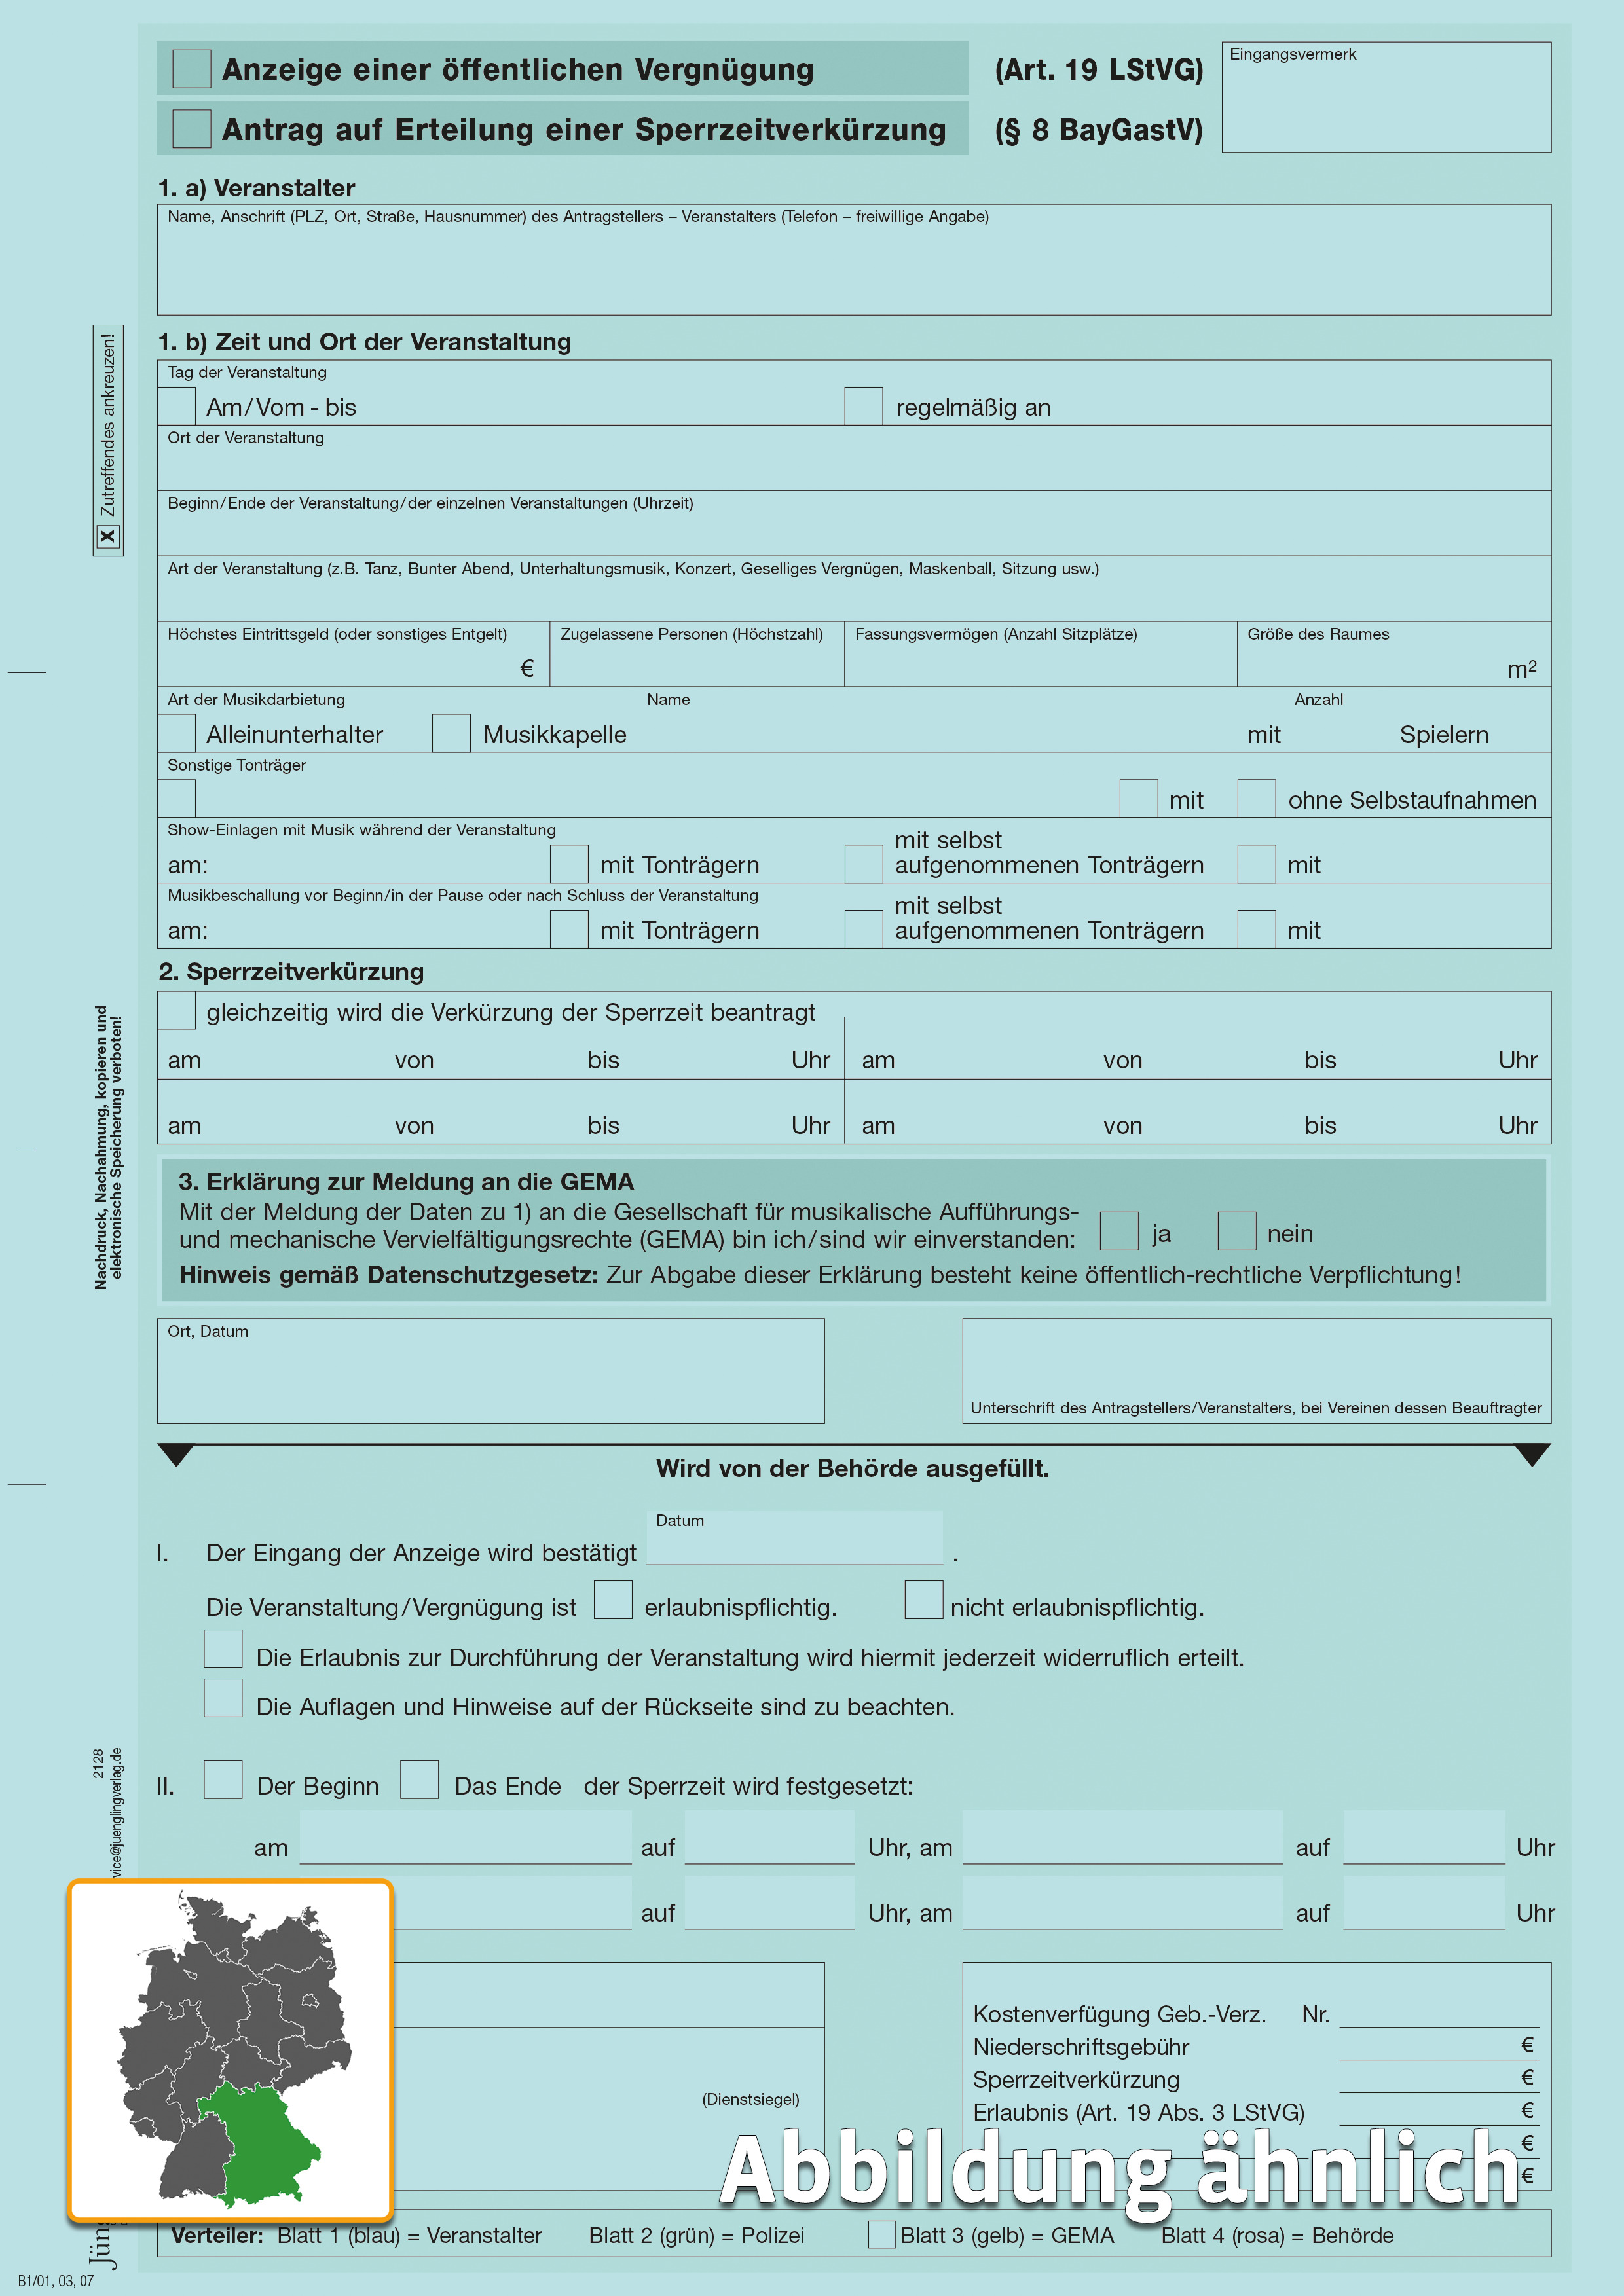 Anzeige Art. 19 LStVG und Sperrzeitverkürzung (Bayern), A4 4-fach